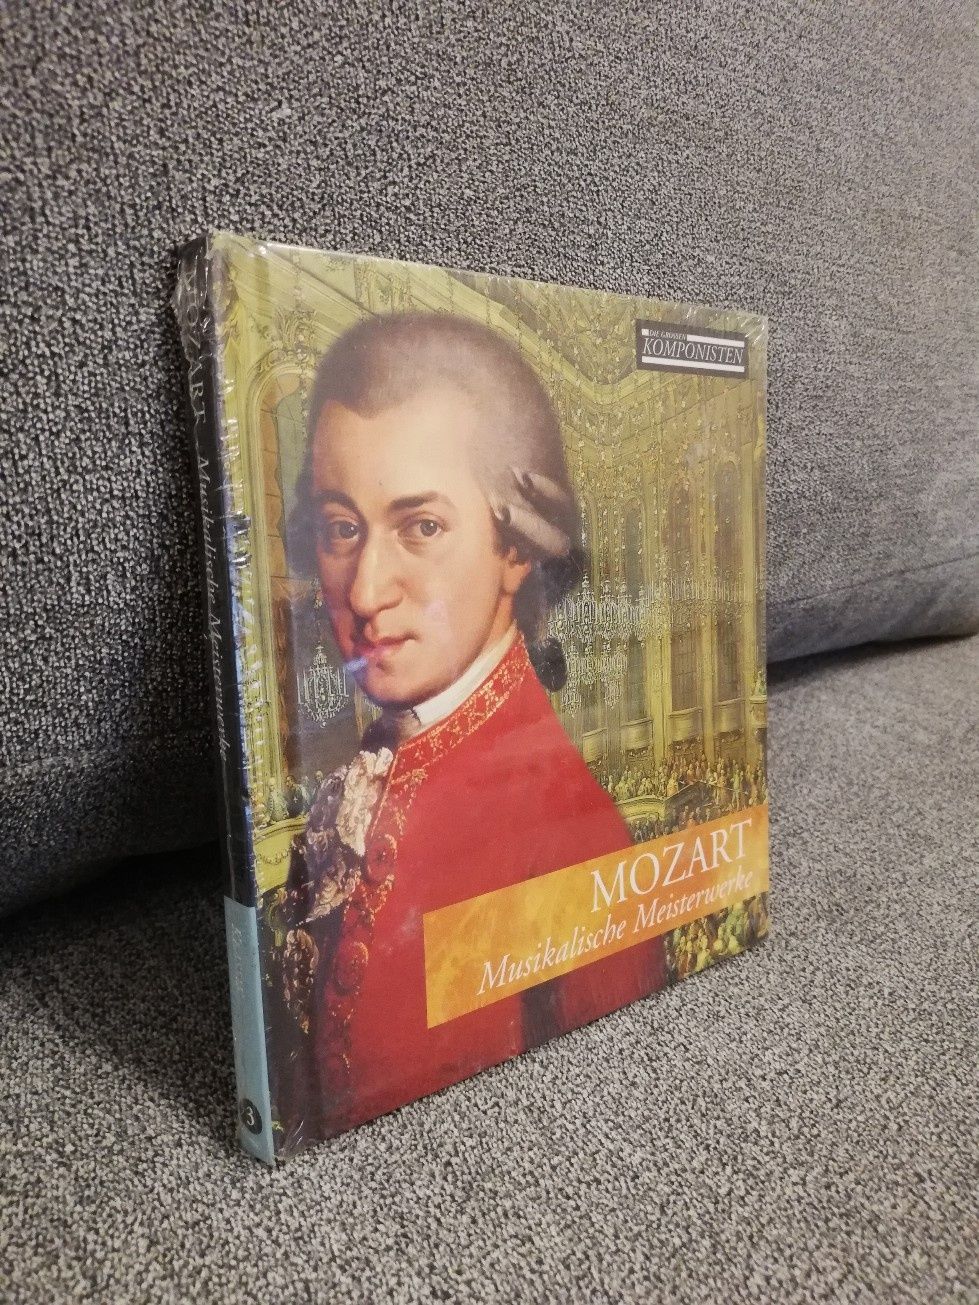 Mozart Musikalische Meisterwerke CD nówka w folii